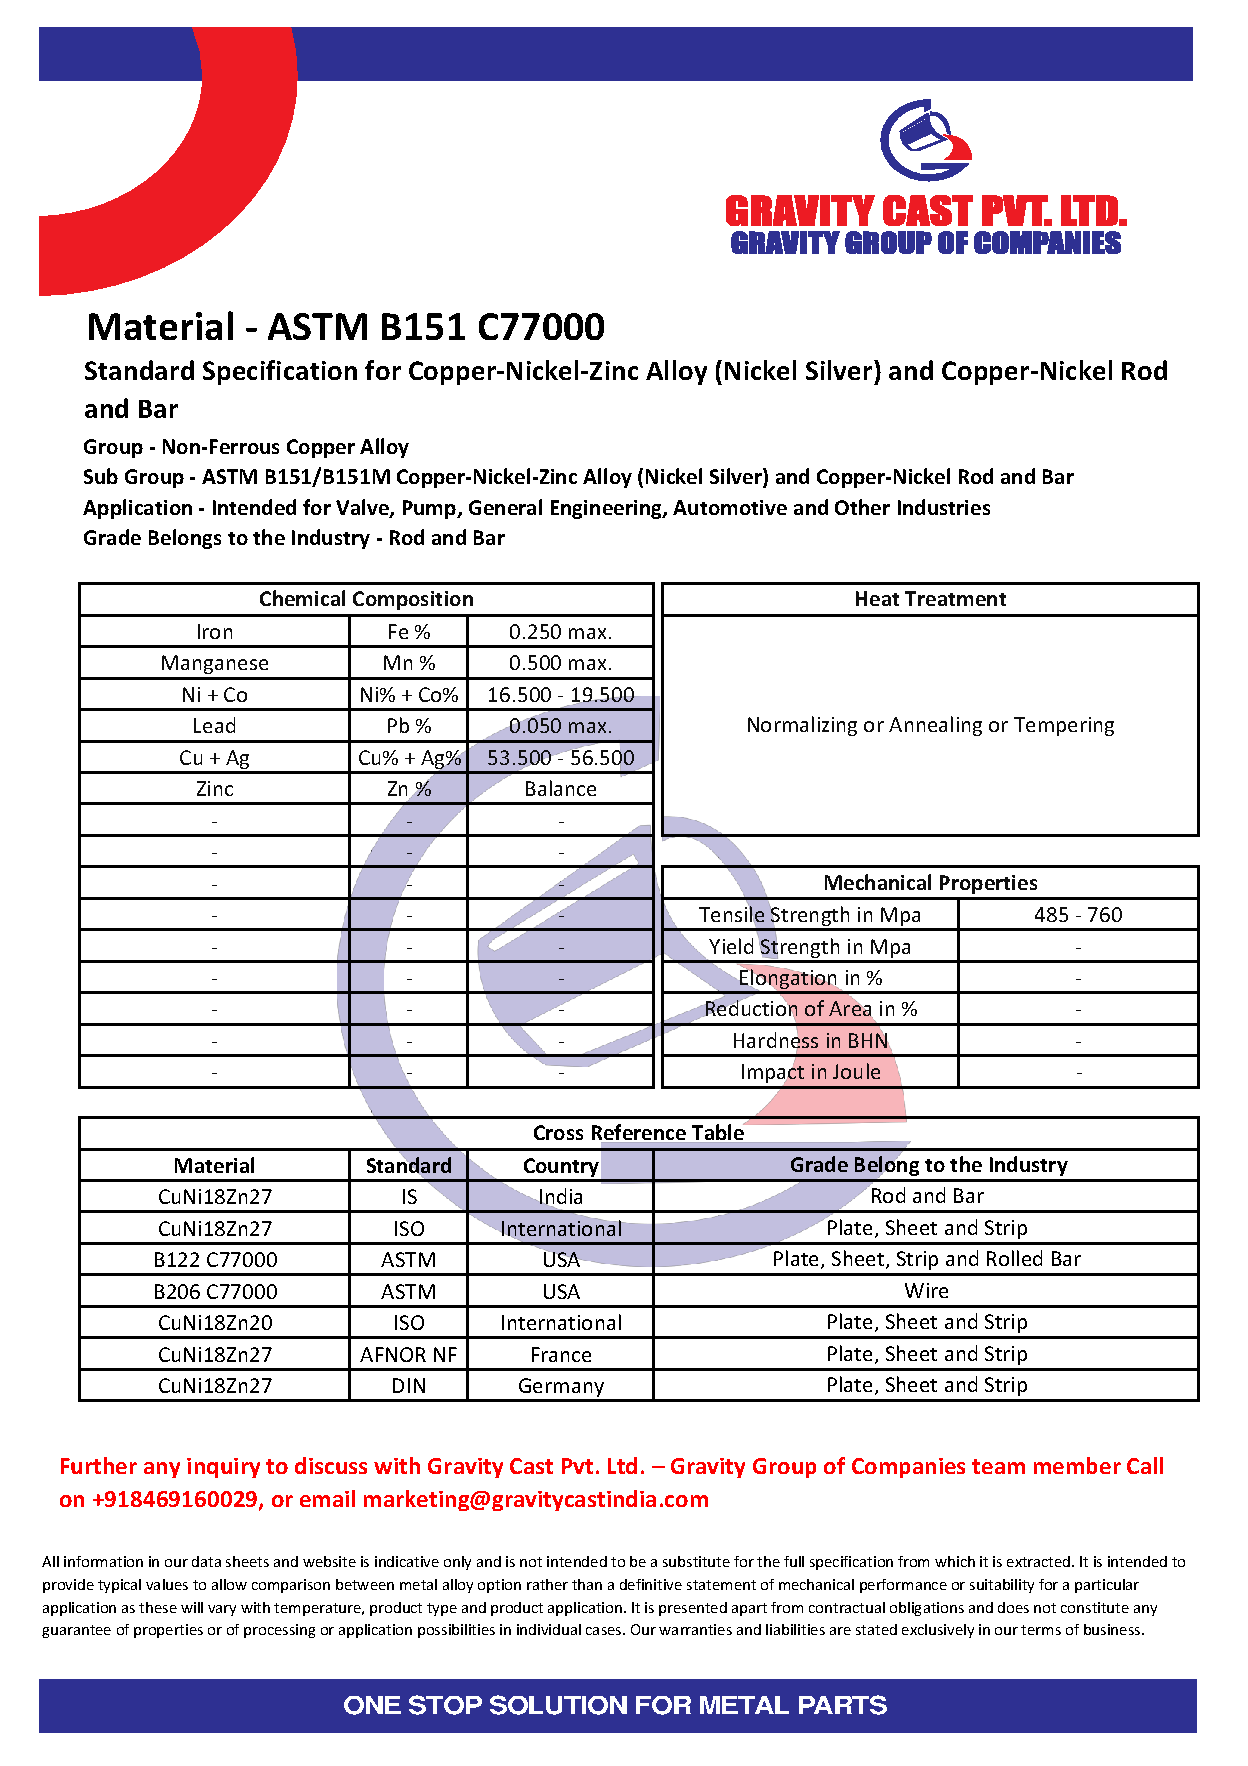 ASTM B151 C77000.pdf